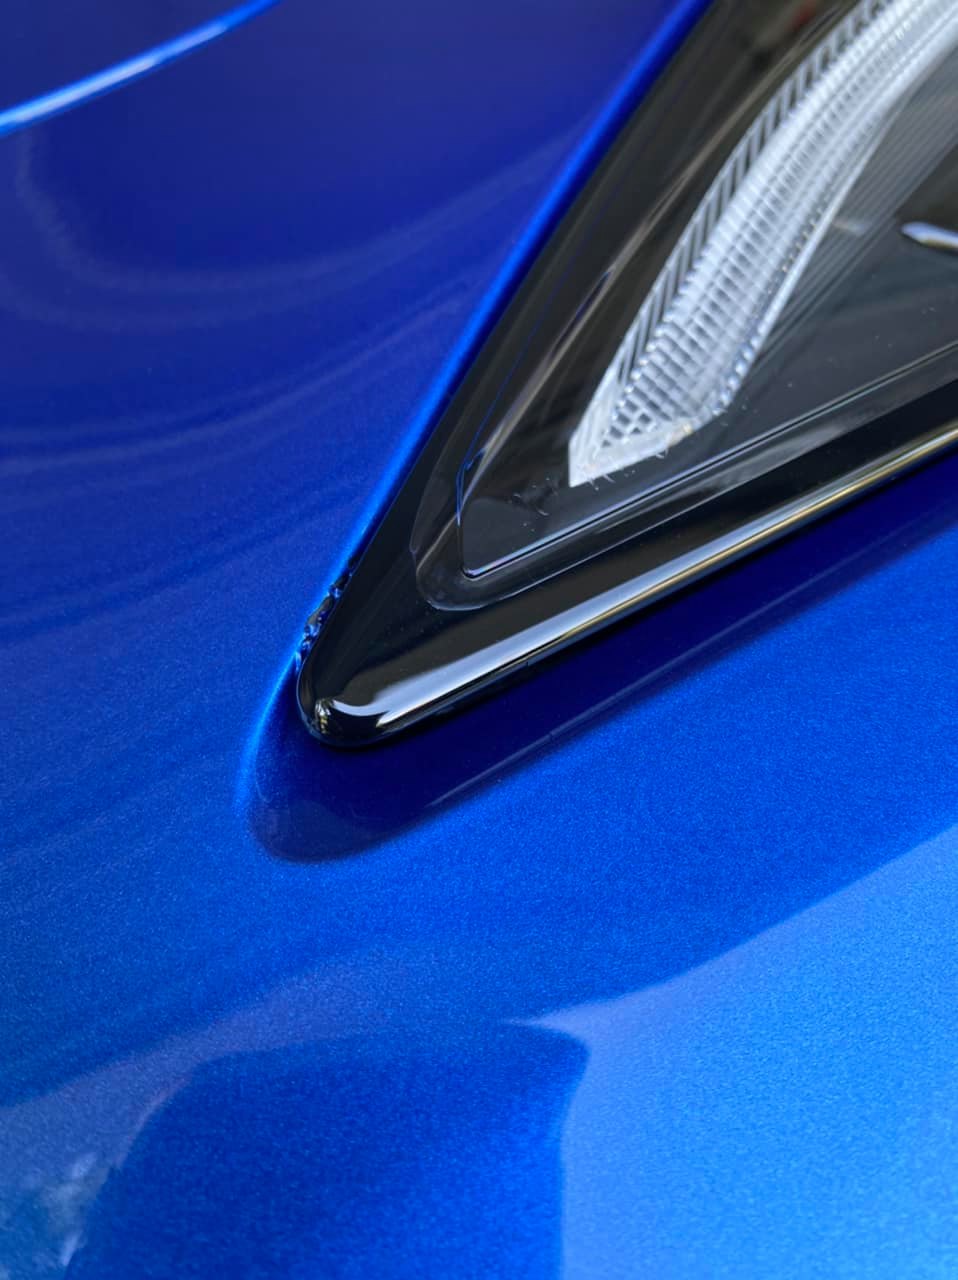 C8 Corvette Headlight Rubs Paint Off the Front Bumper, Dealer Will Fix